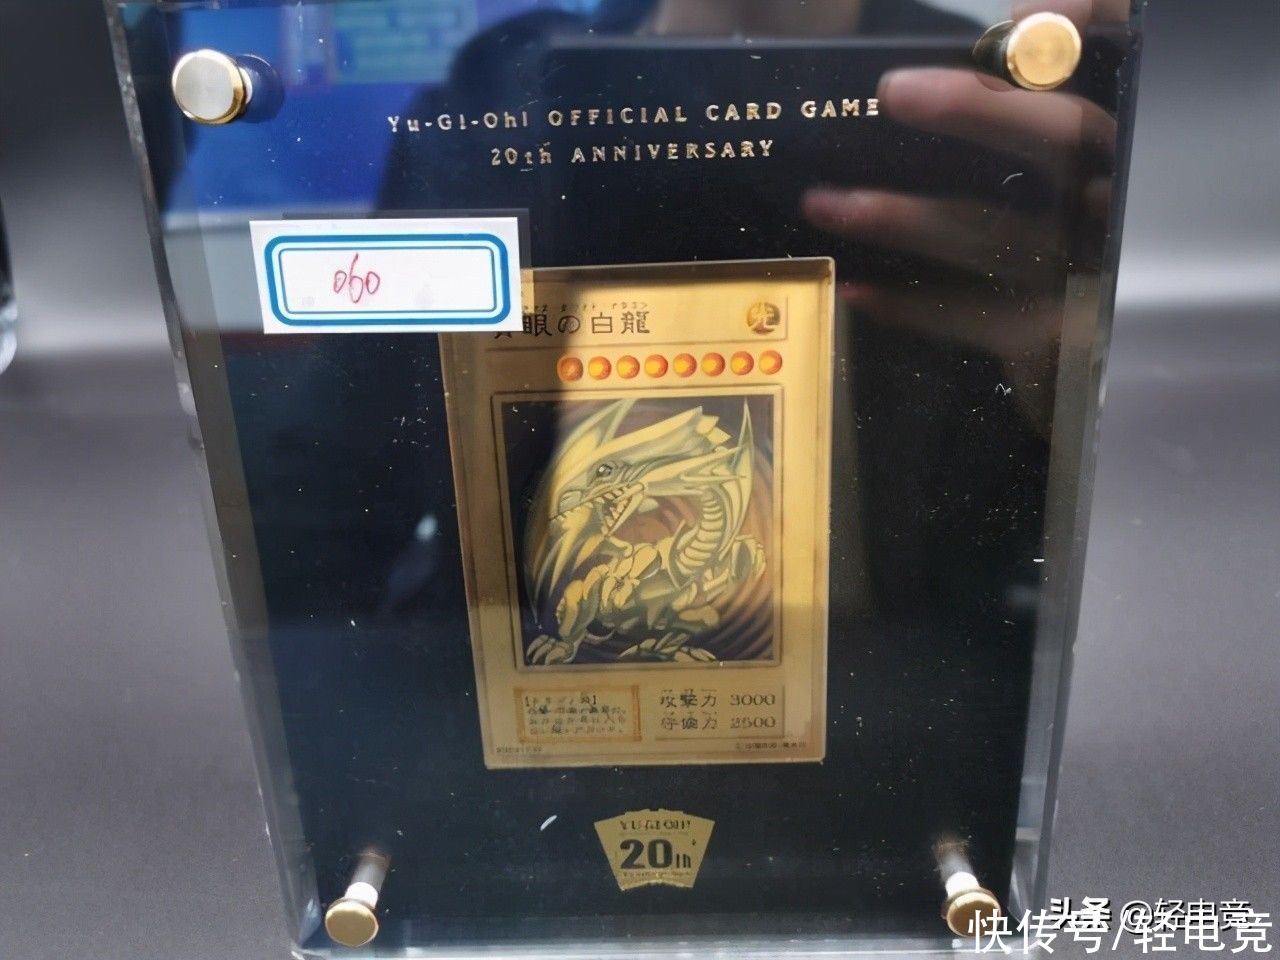 80元青眼白龙游戏卡被拍到8732万后续:4G